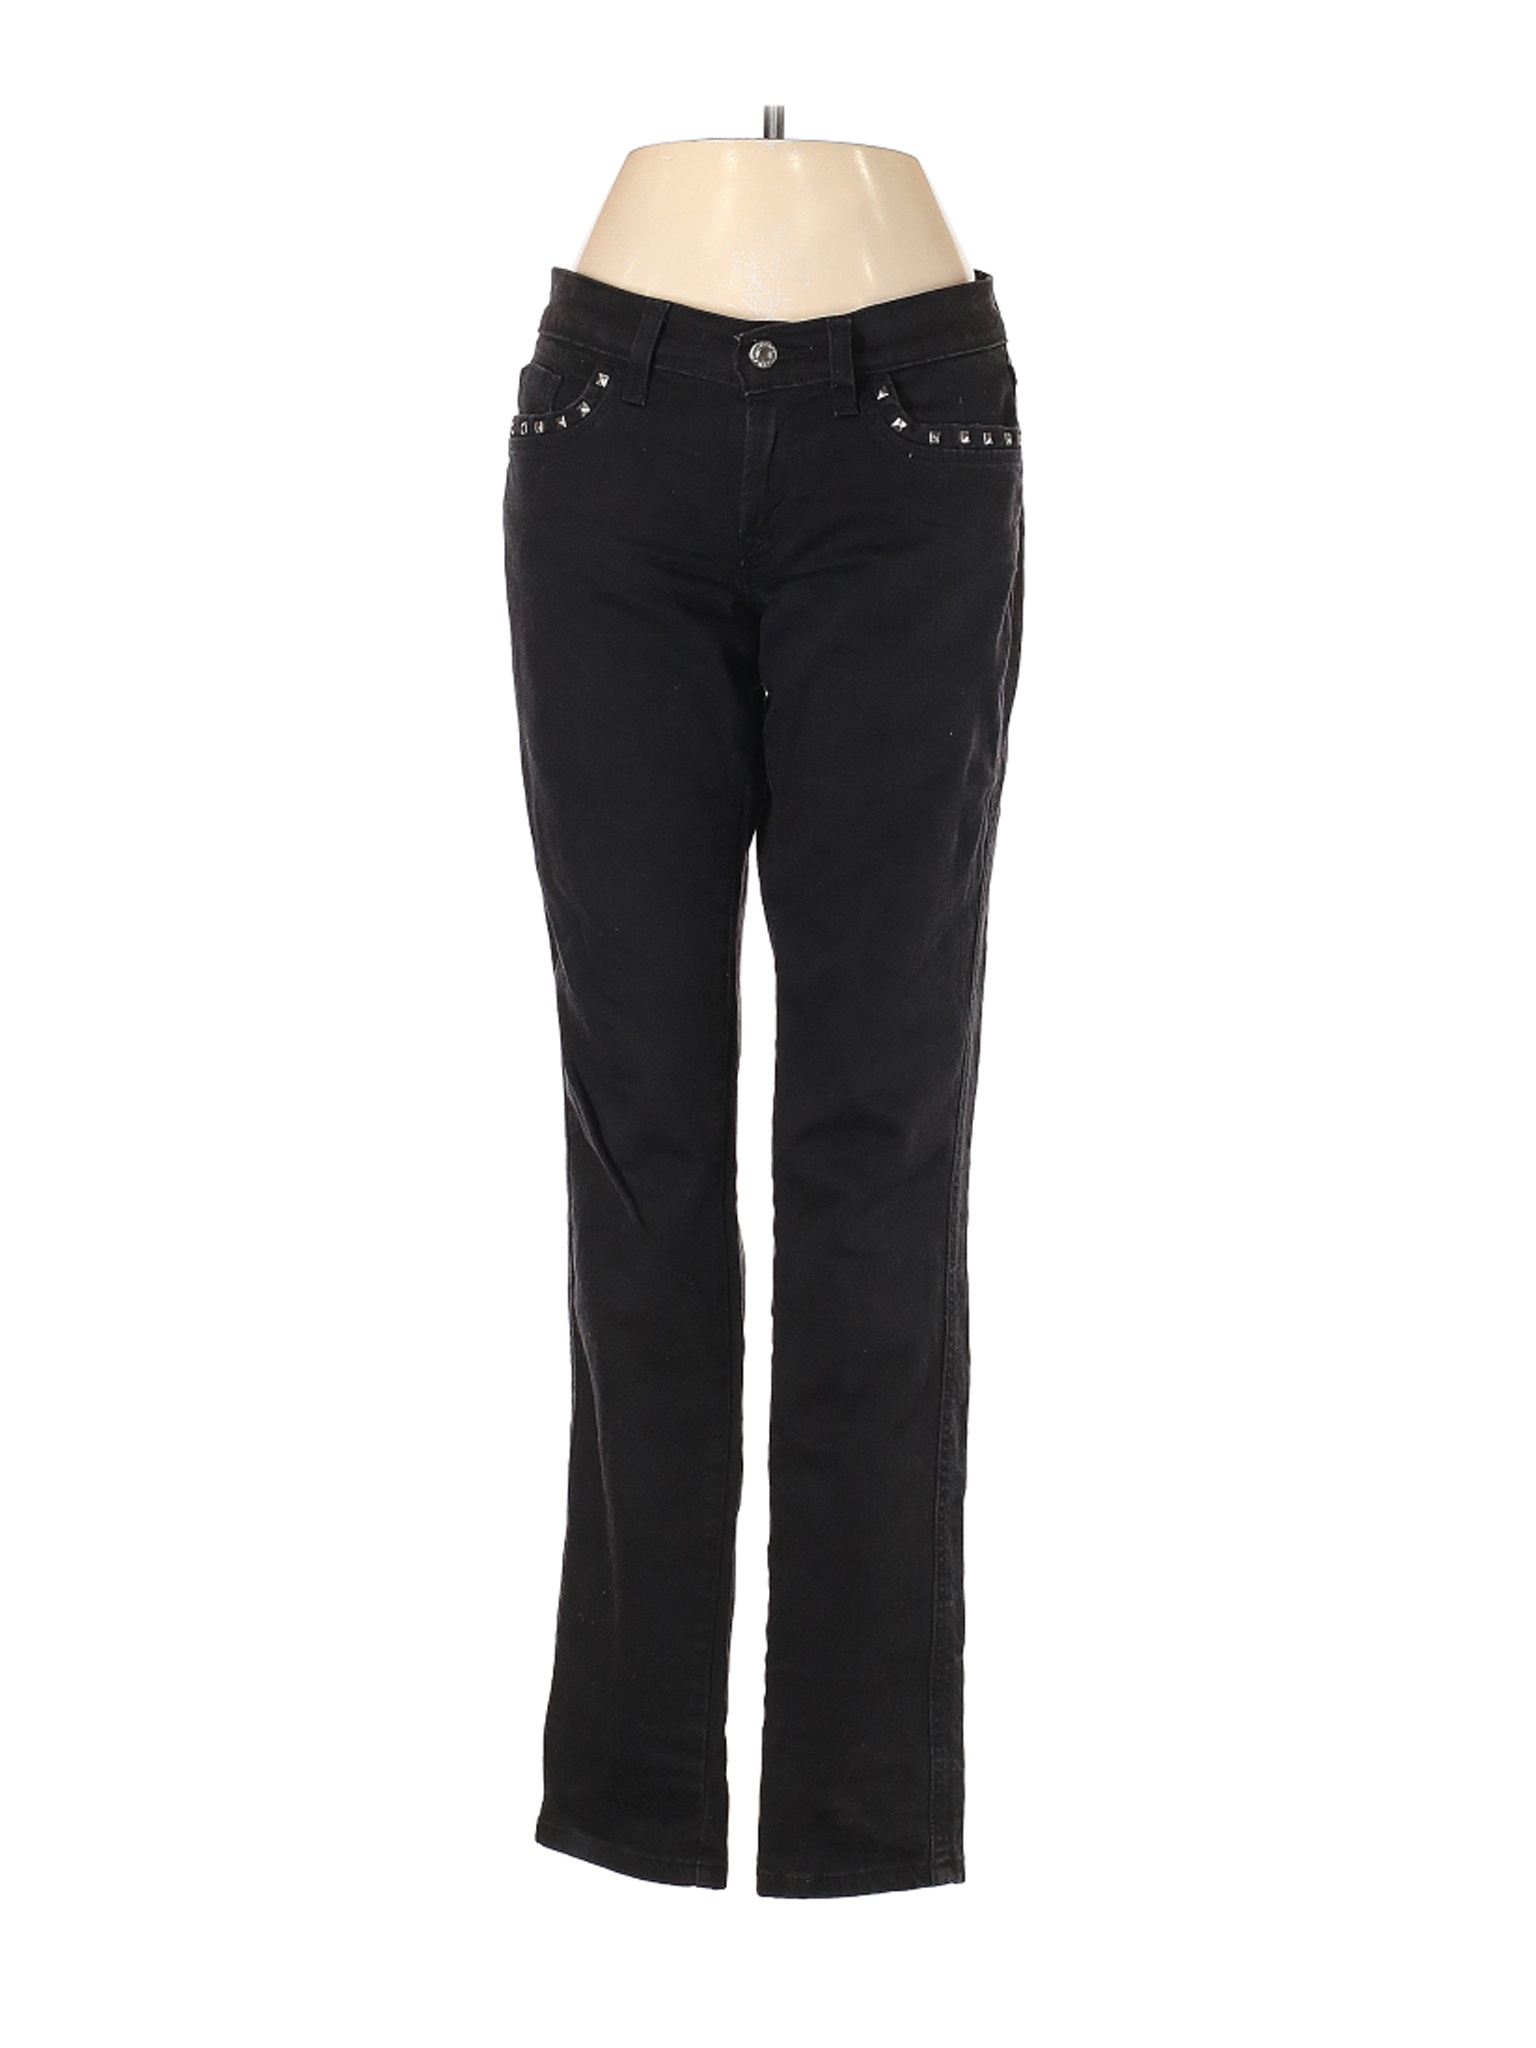 Levi's Women Black Jeans 5 | eBay